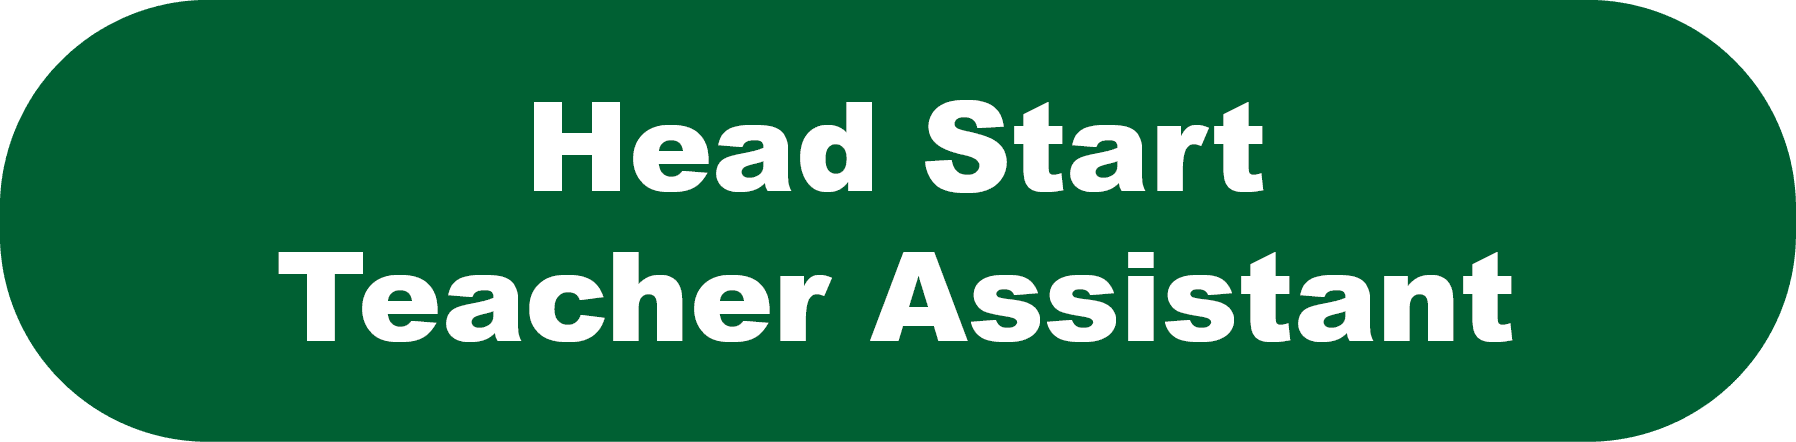 Head Start Teacher Assistant